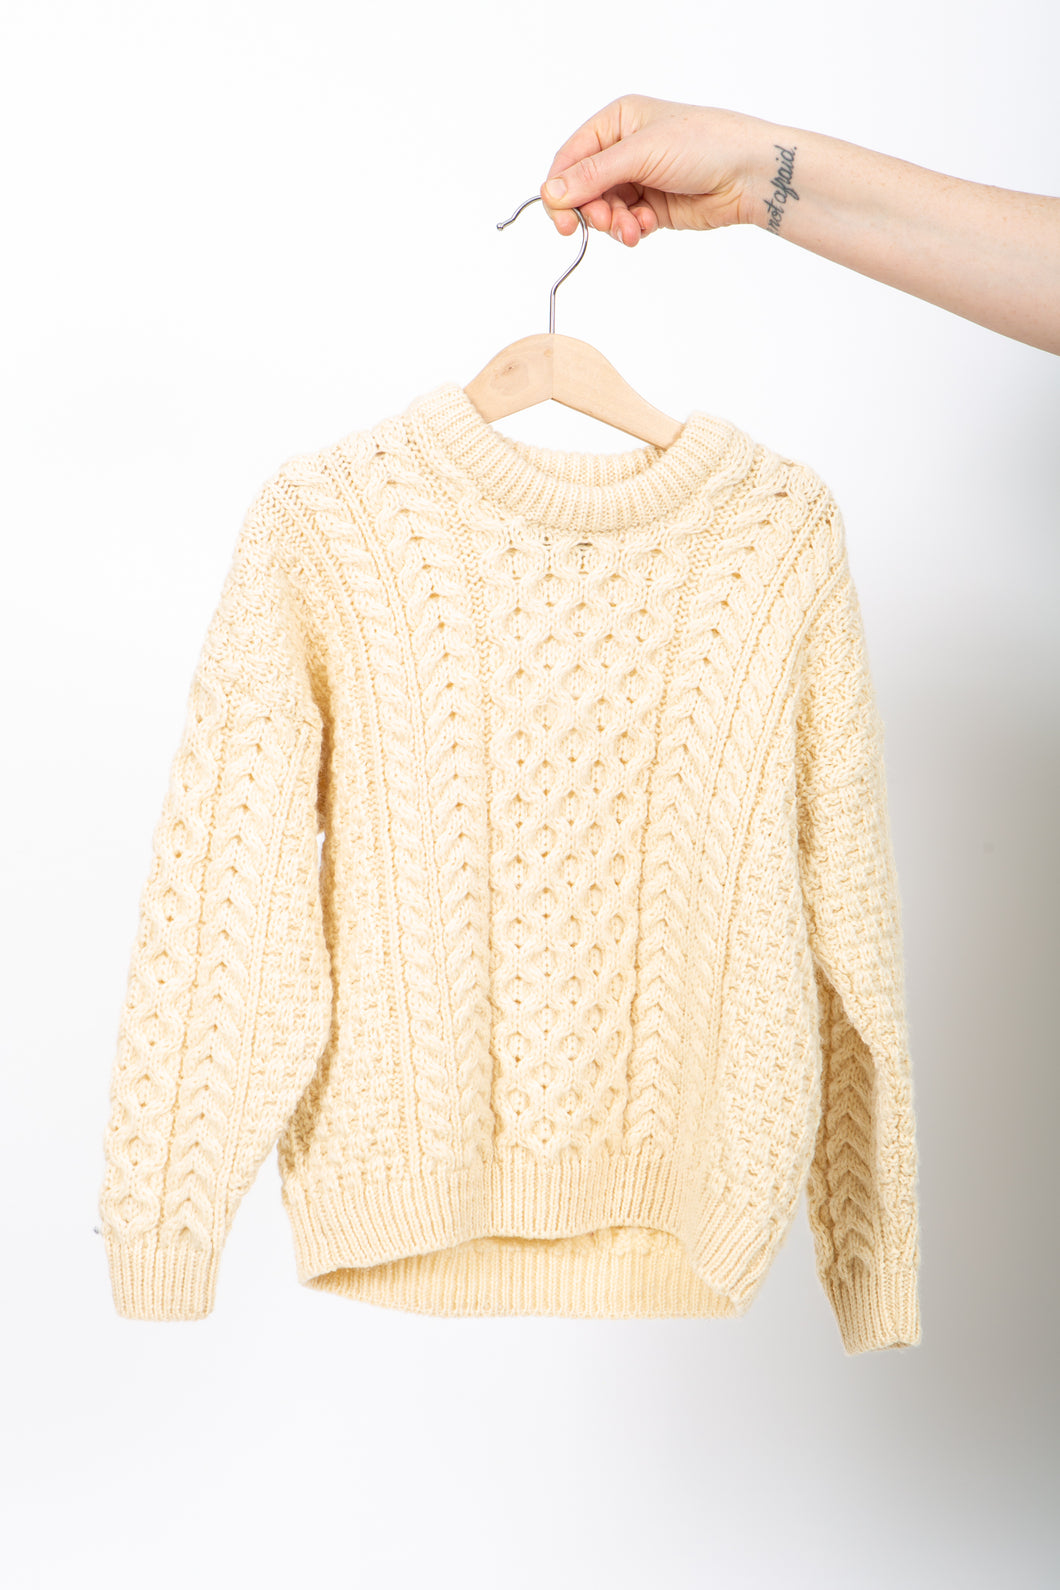 Childen's Irish Sweater